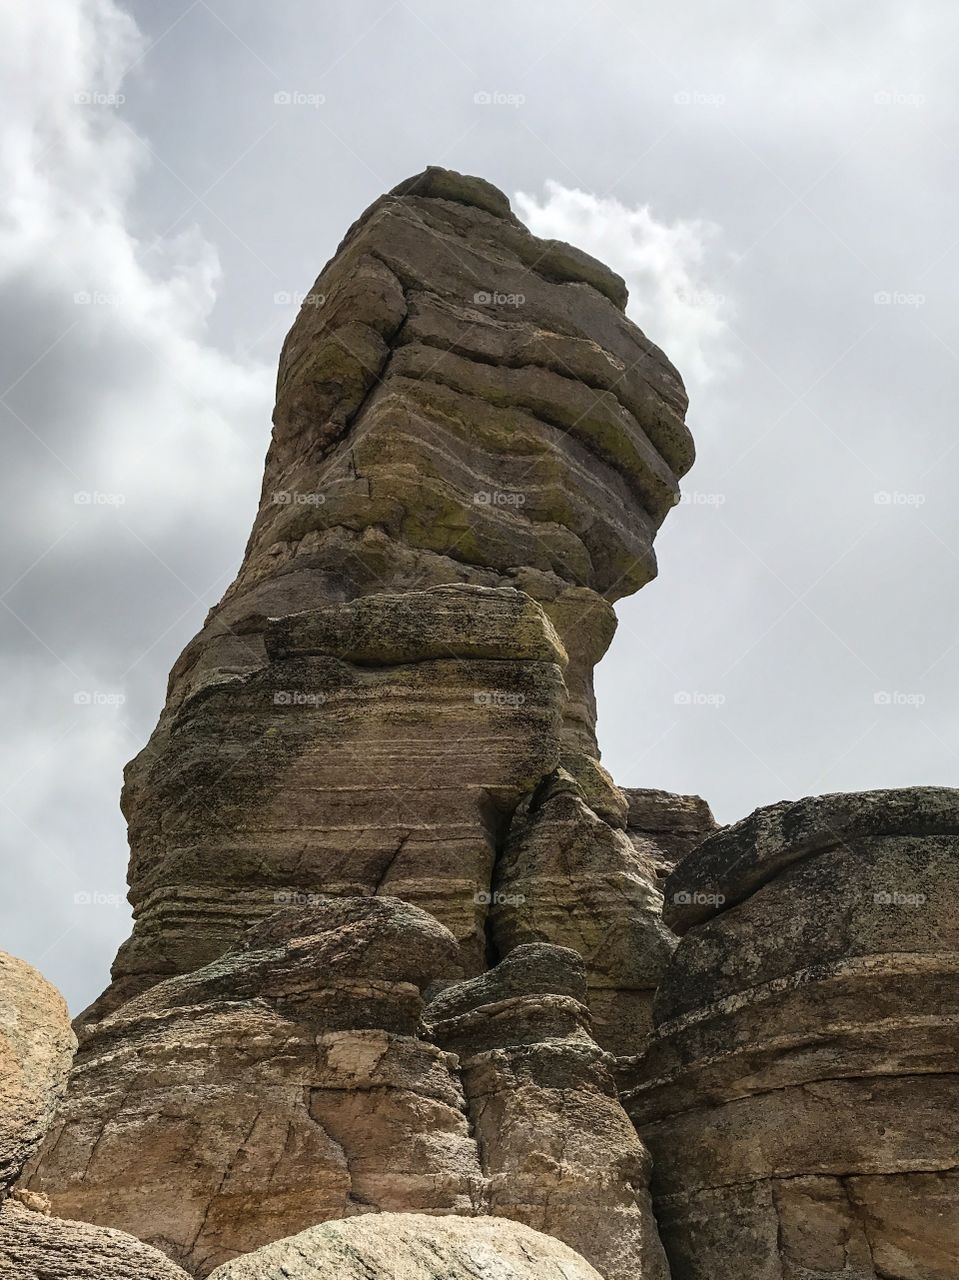 Nature - Hiking Adventures / Rock Climbing 